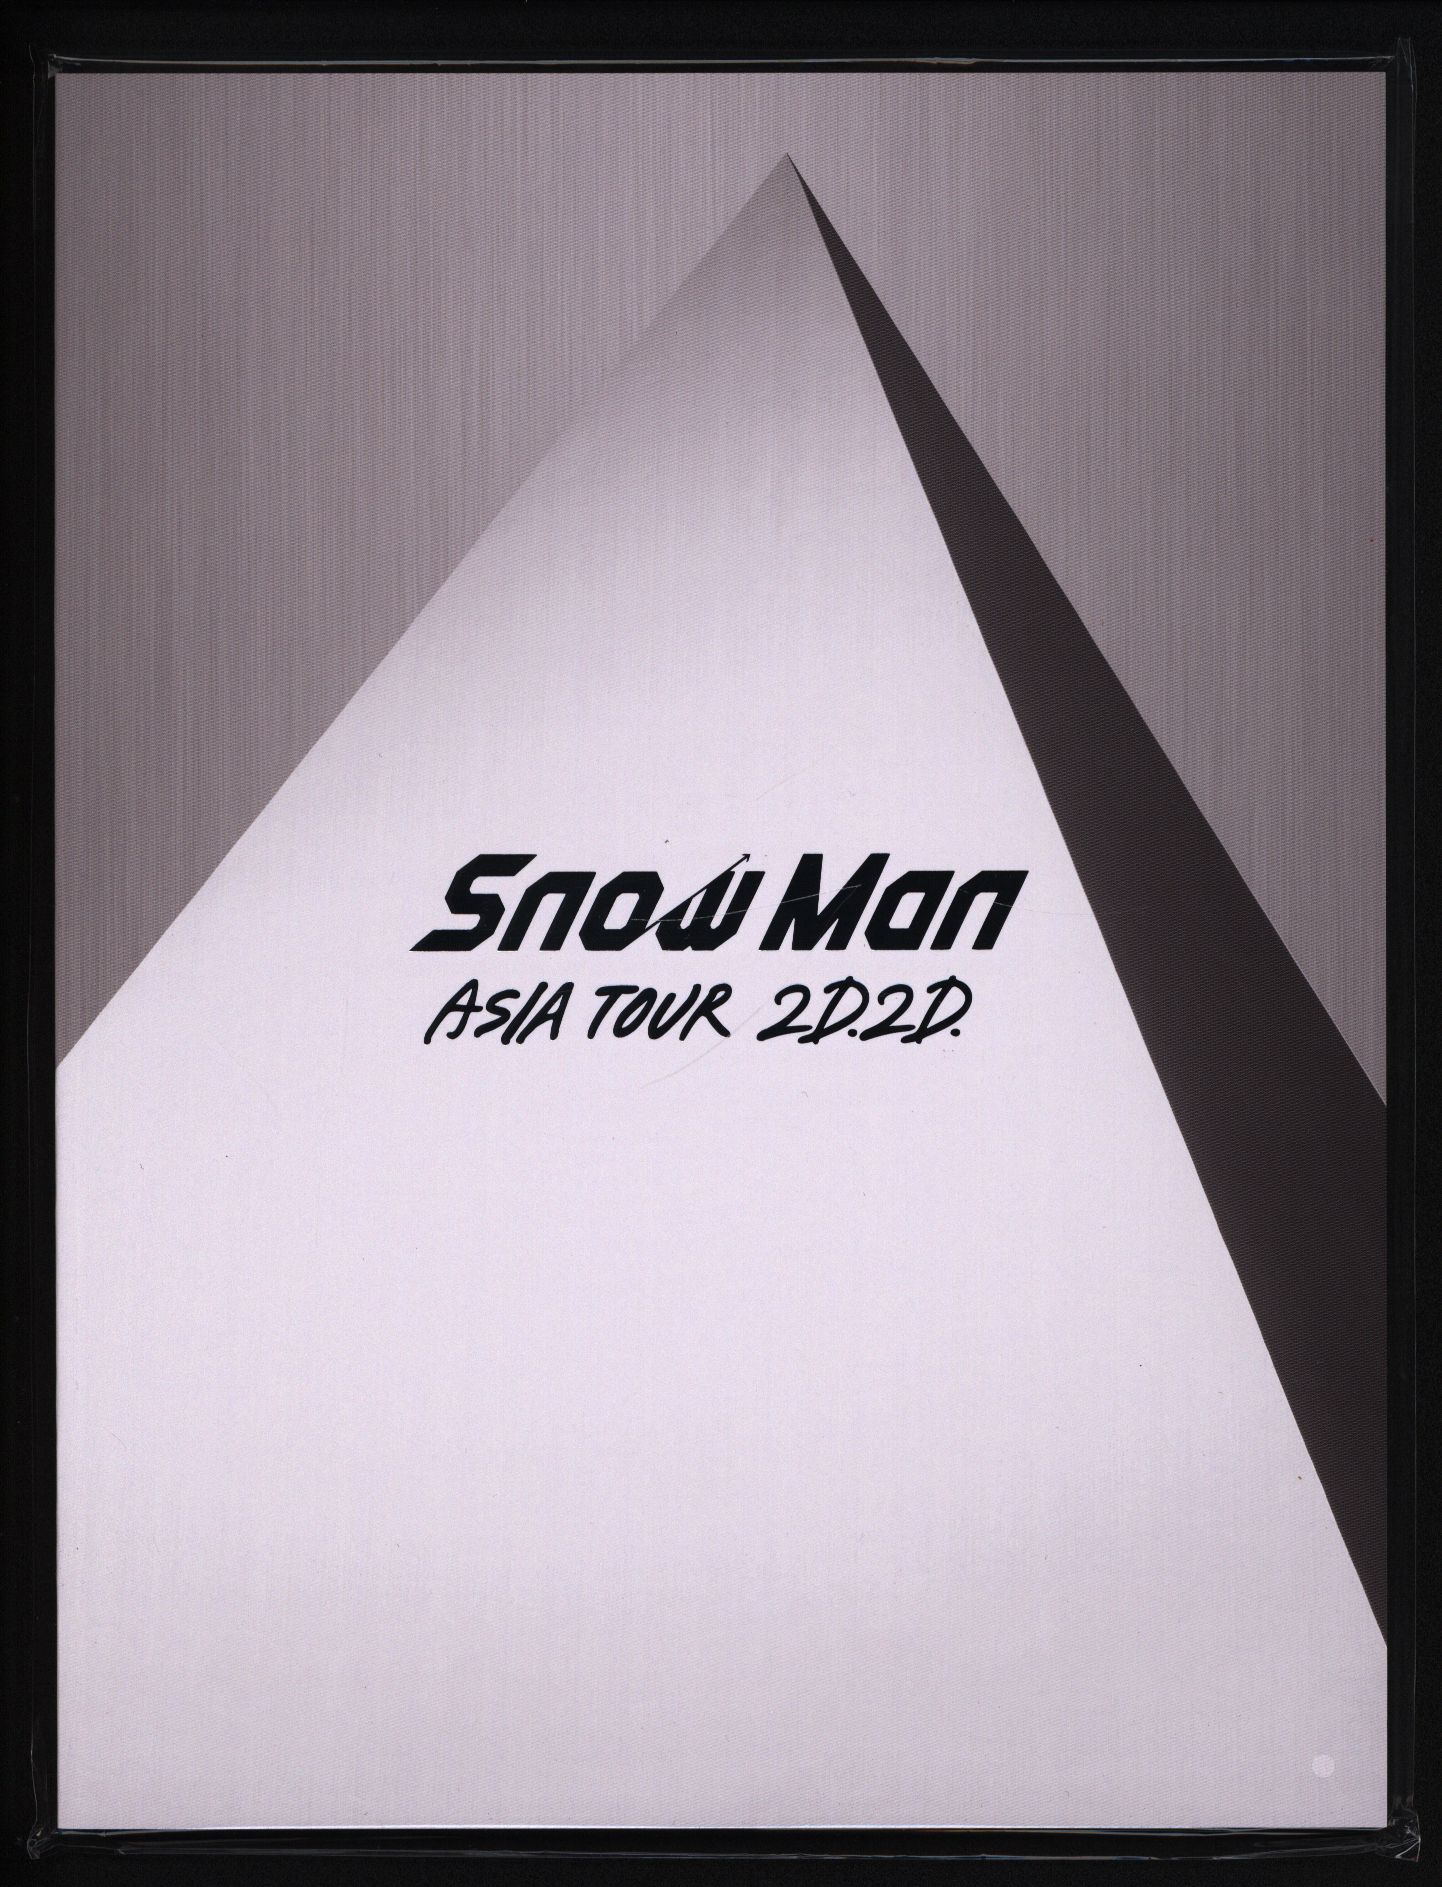 超歓迎 SnowMan ASIA BluRayDVDパンフレット 2D.2D. TOUR ミュージック